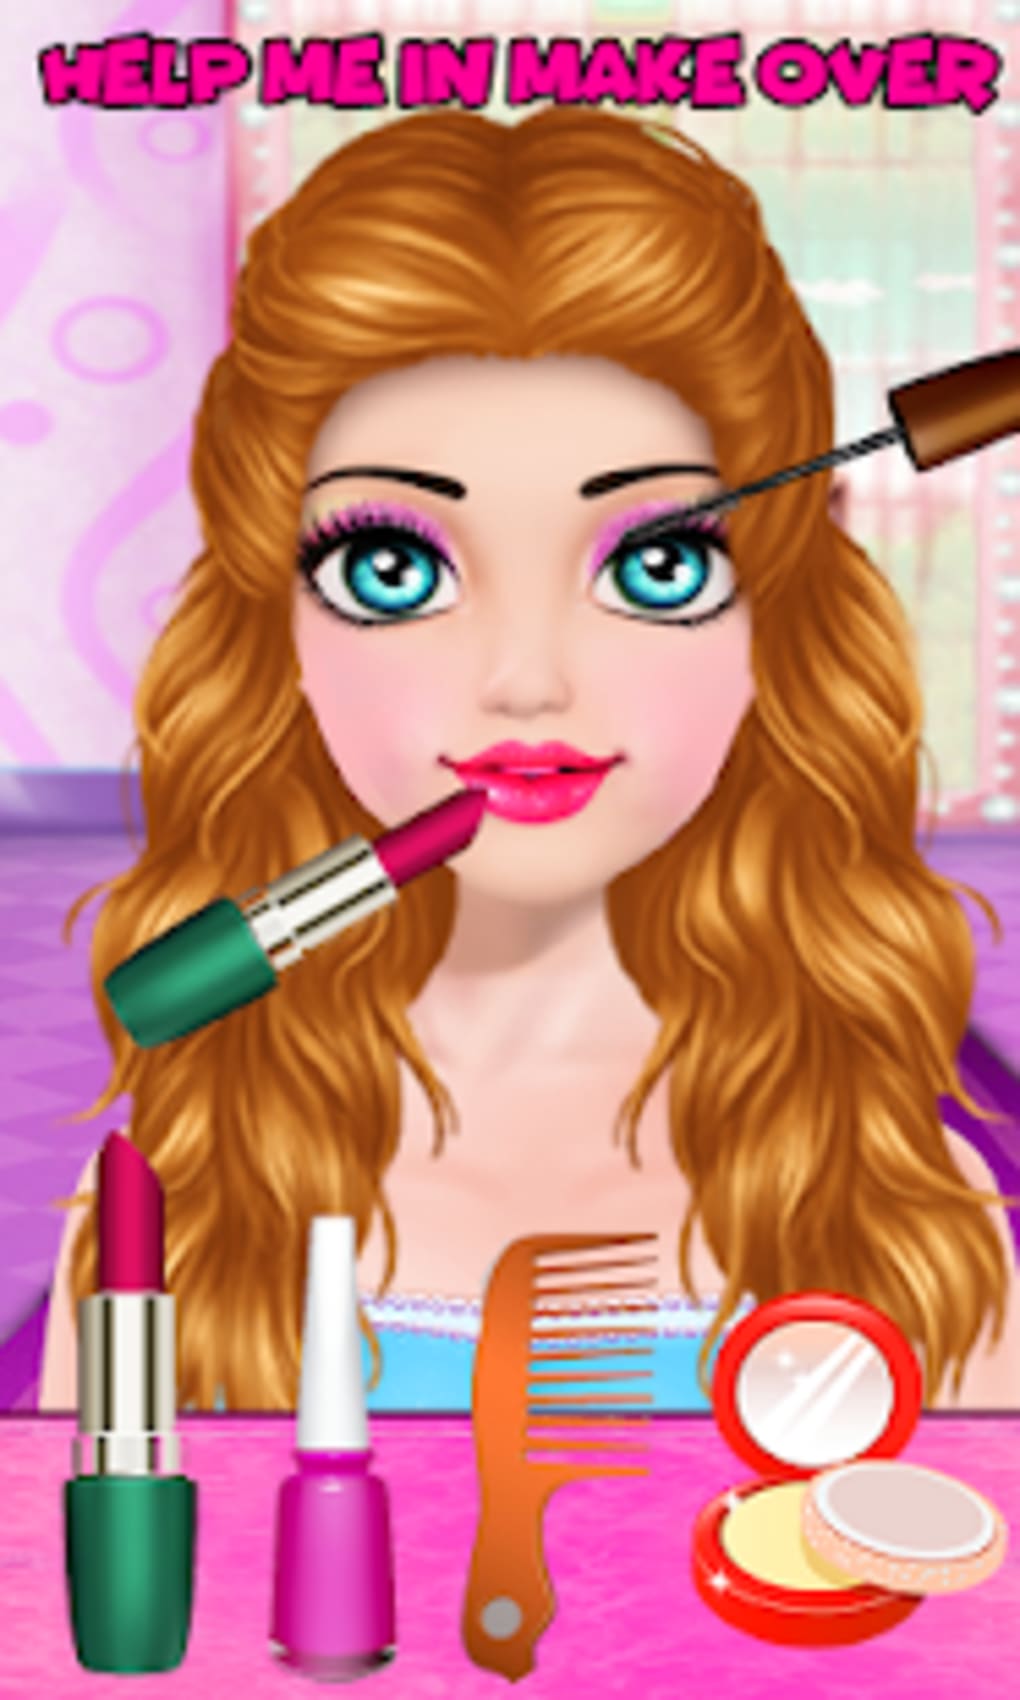 Makeup Salon:Jogo de maquiagem APK (Android Game) - Baixar Grátis